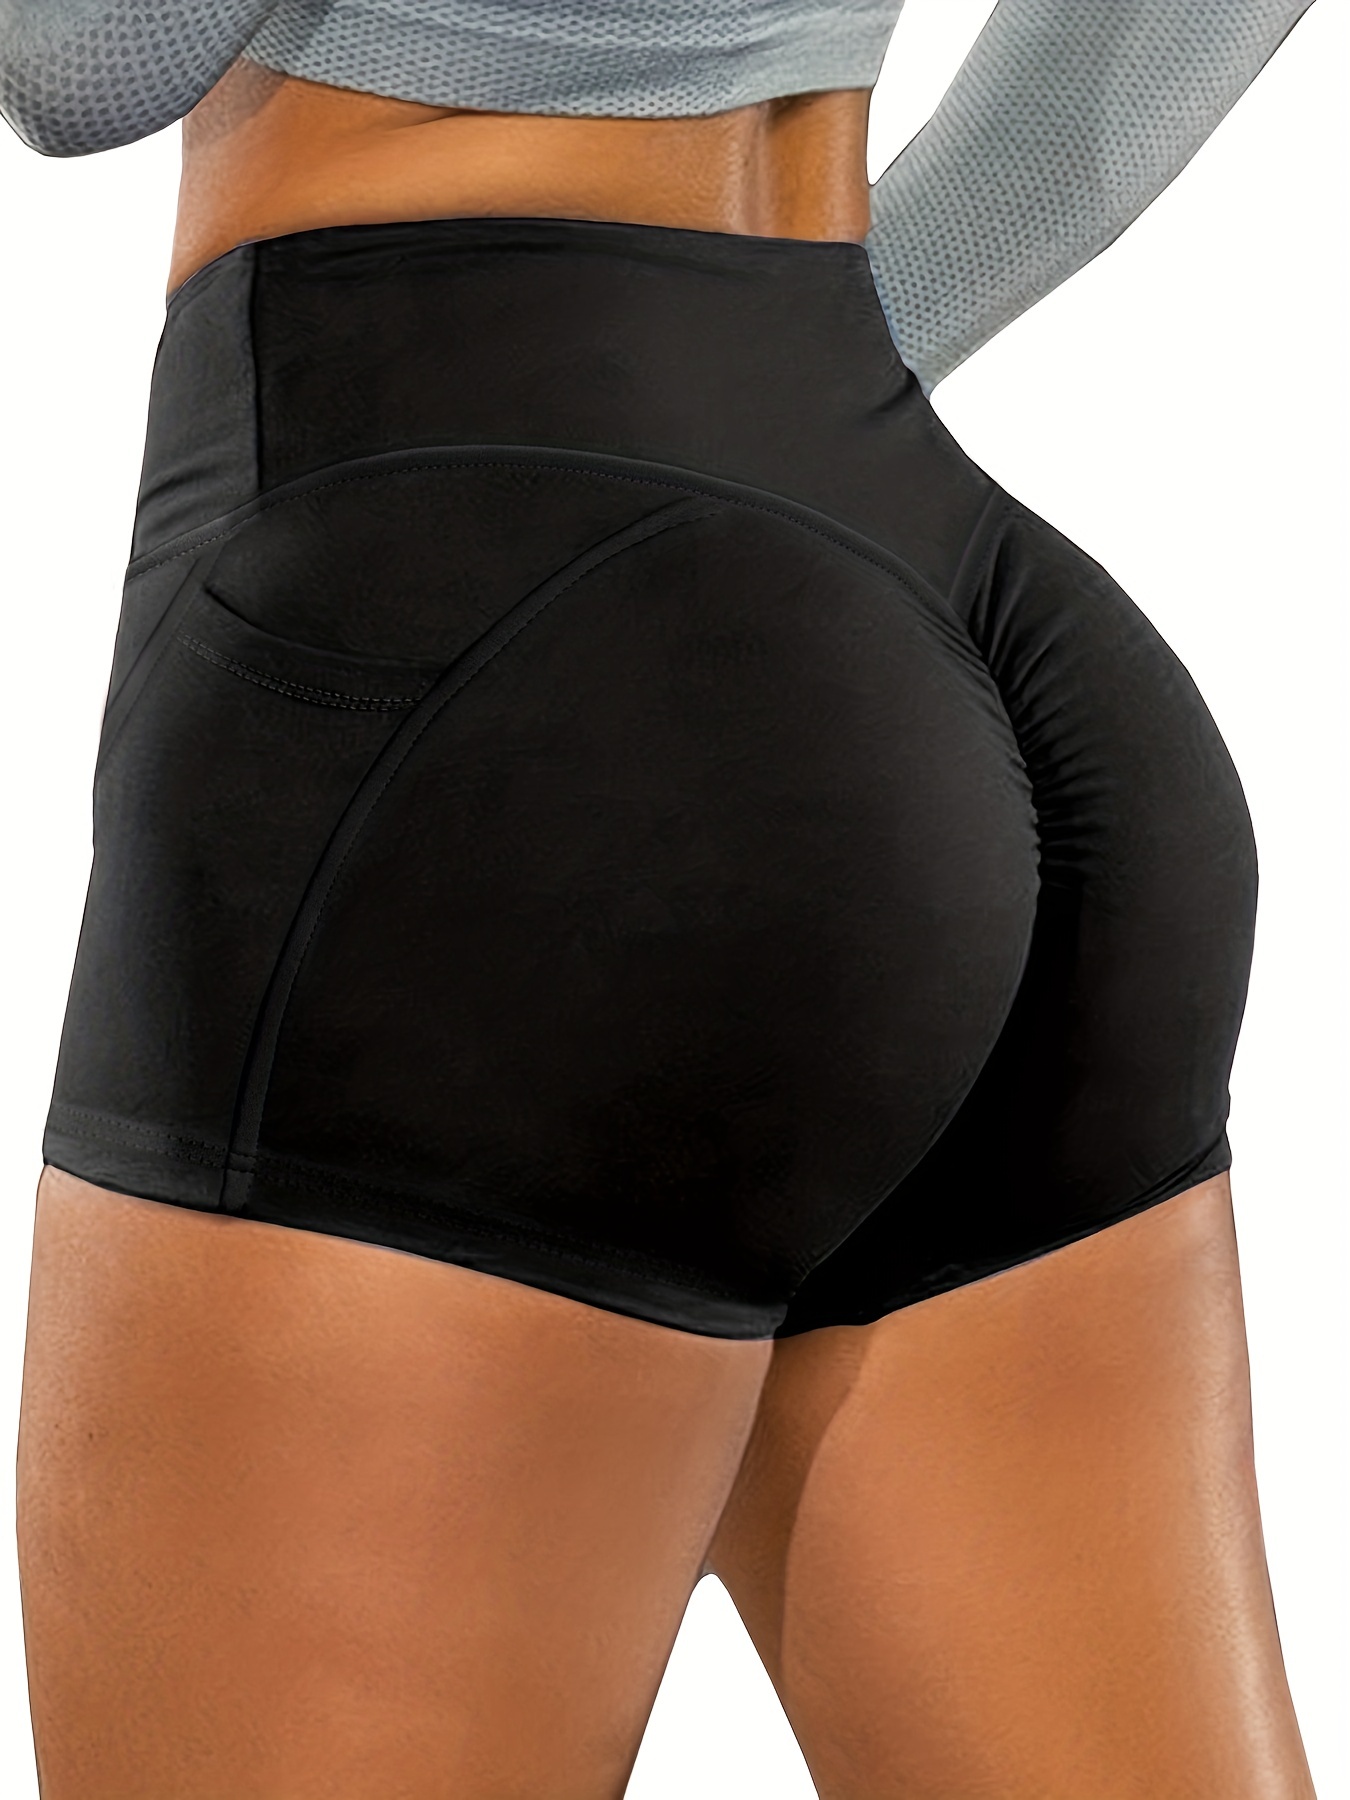 High Waist Shorts Women Workout Gym Shorts Push Up Scrunch Butt